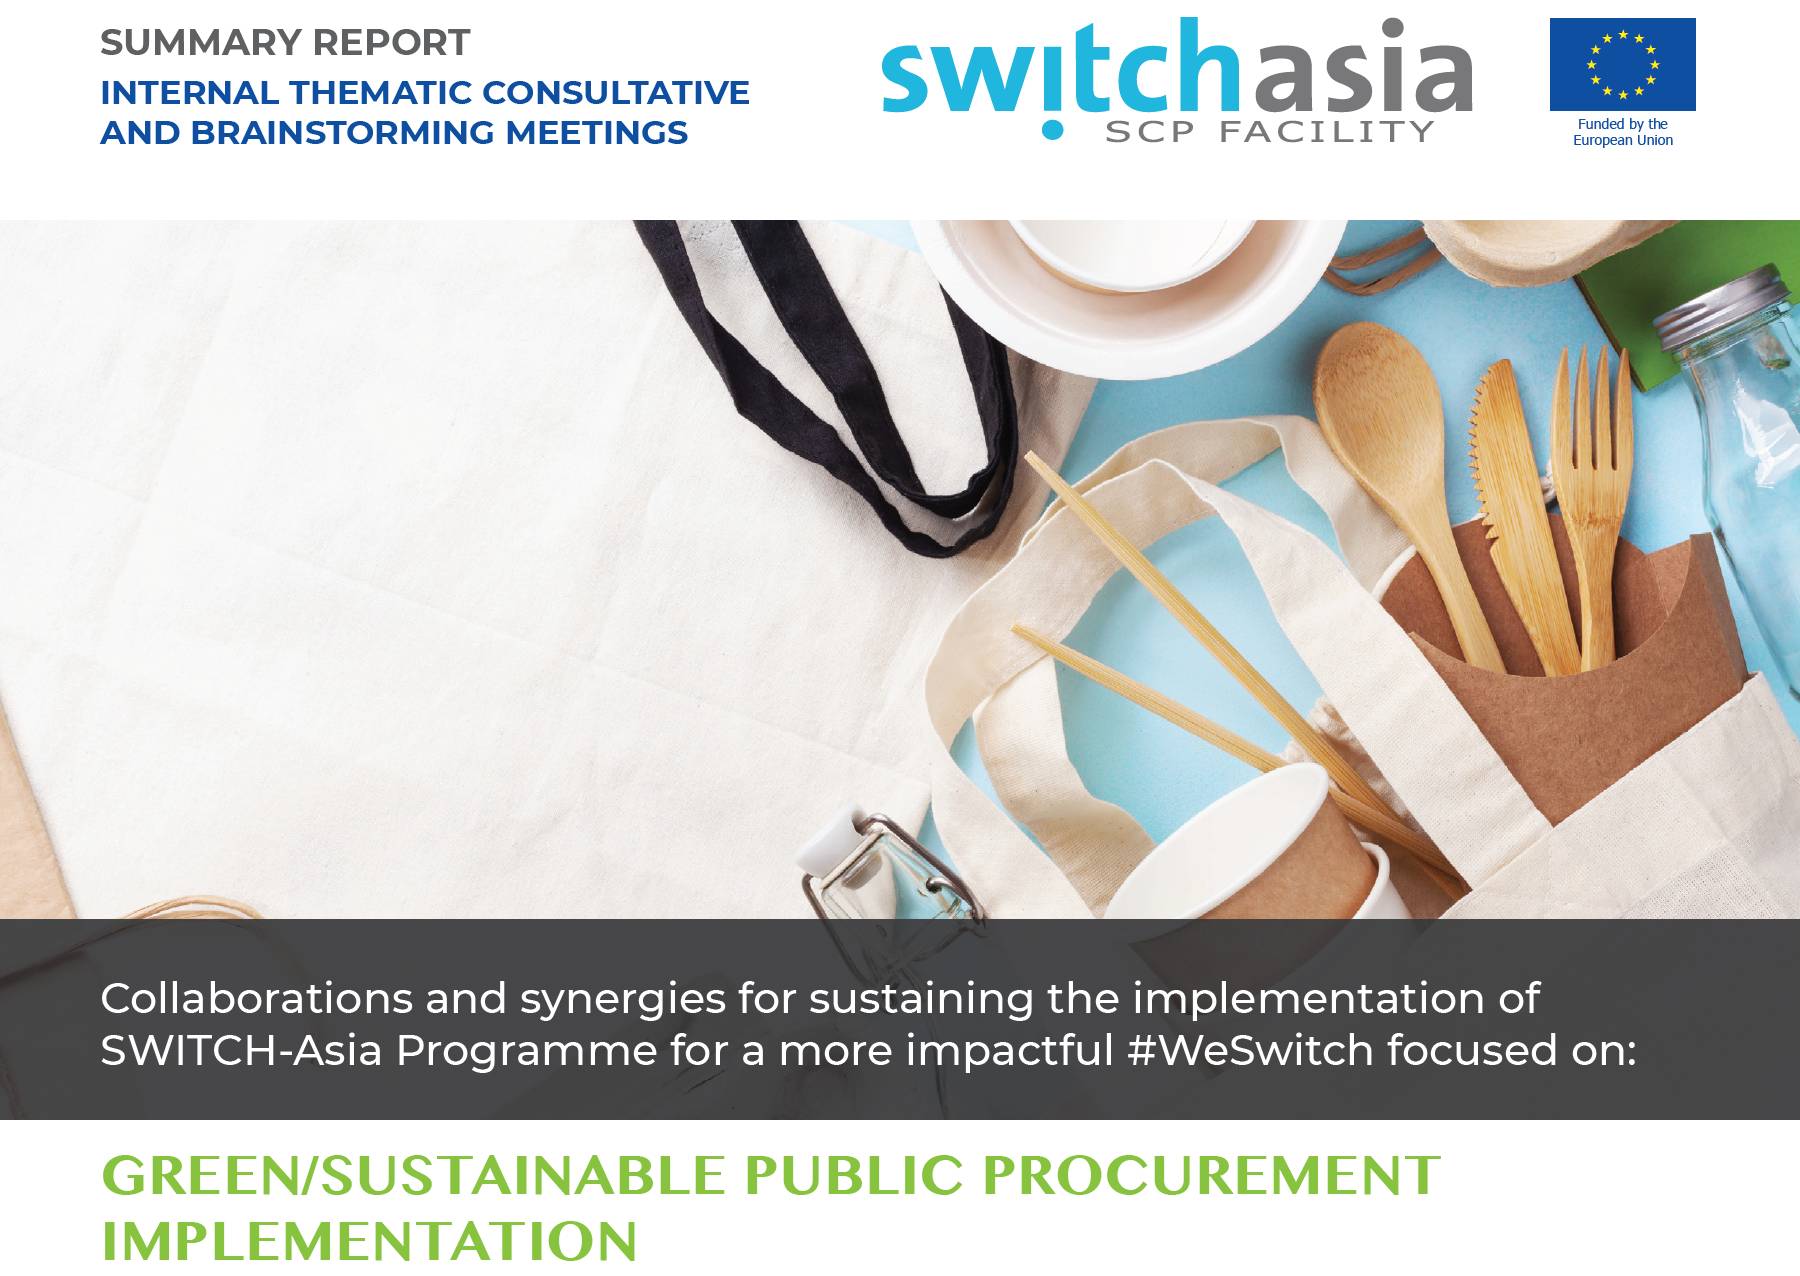 Green/Sustainable Public Procurement Implementation